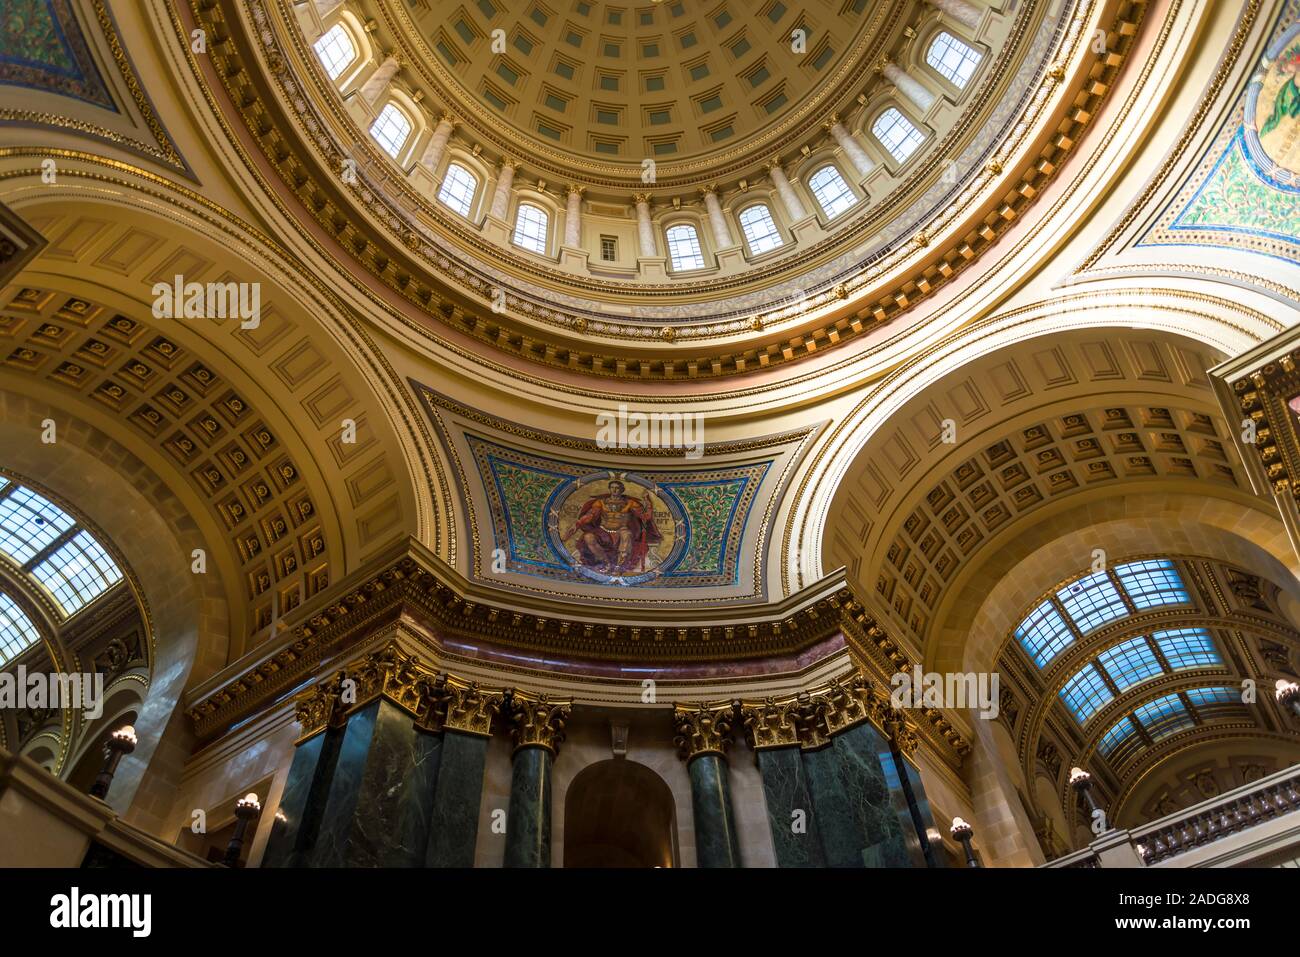 Wisconsin State Capitol, un édifice Beaux-Arts achevé en 2017, Madison, Wisconsin, USA Banque D'Images